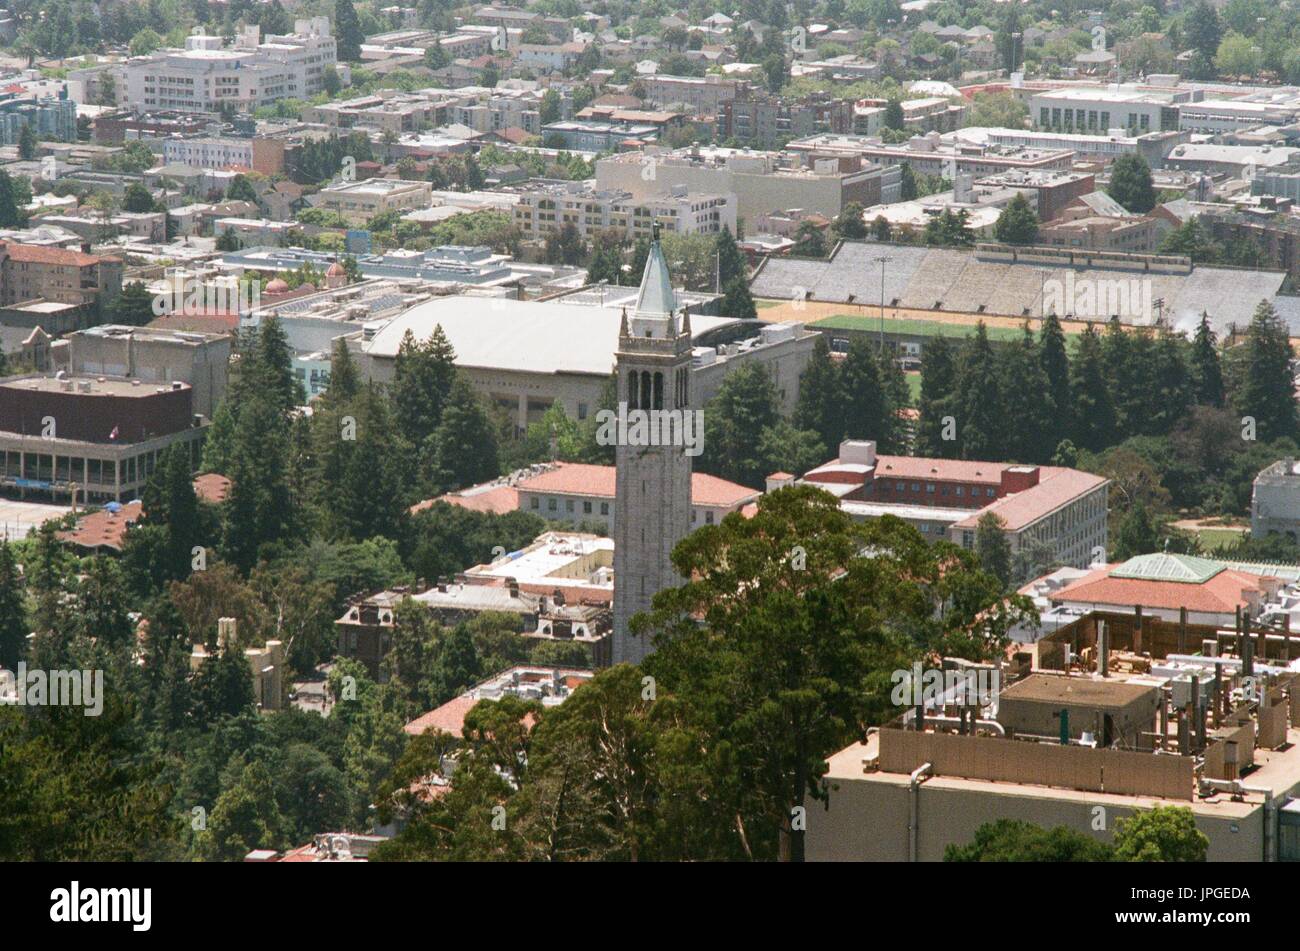 Vista aerea del campus della University of California a Berkeley (UC Berkeley), compreso il campanile e la torre dell orologio, Berkeley, California, 19 giugno 2017. Foto Stock